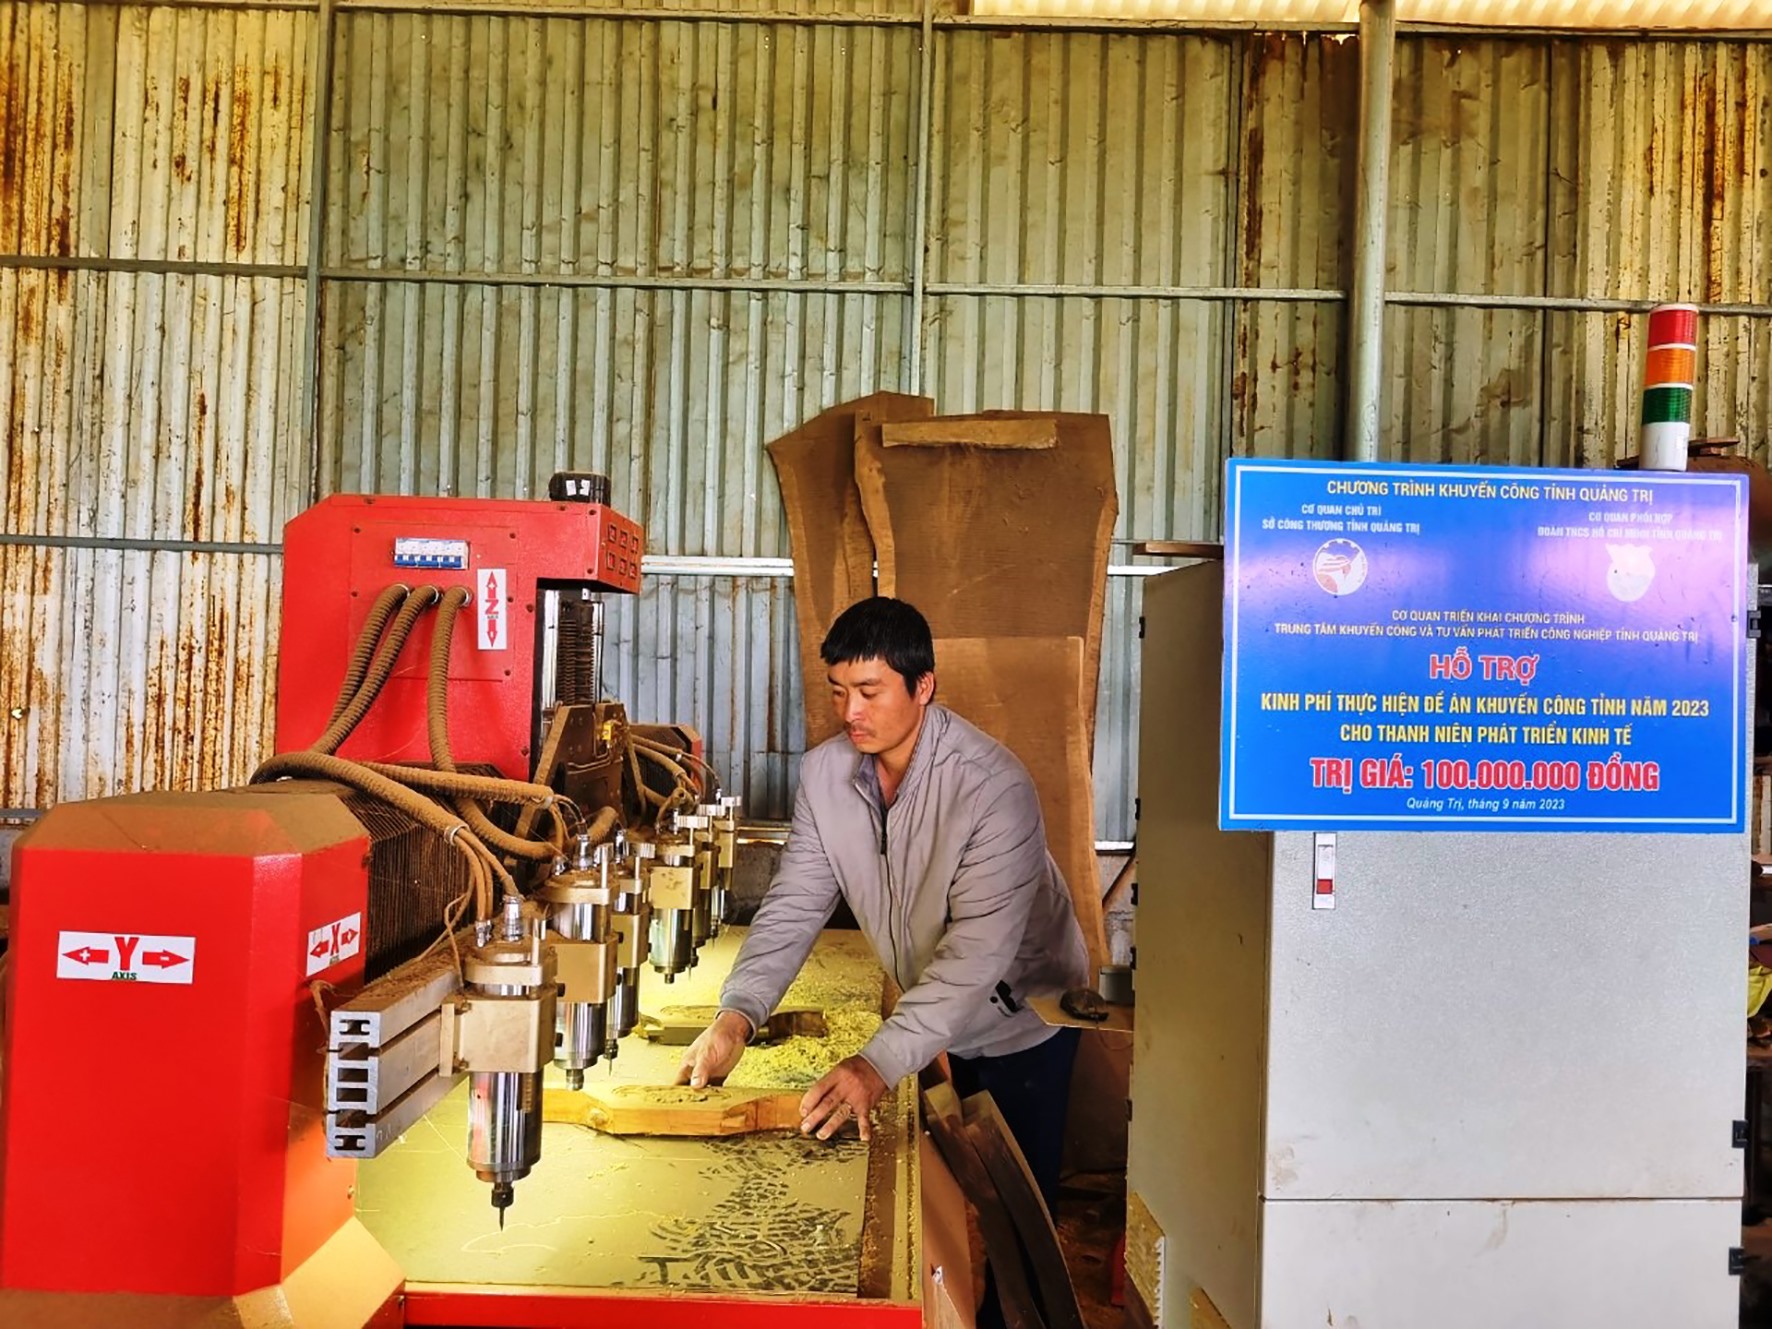 Máy CNC ứng dụng công nghệ chạm khắc trong nghề mộc giúp xưởng sản xuất đồ gỗ của anh Hoàng Công Minh hoạt động hiệu quả hơn -Ảnh: M.L